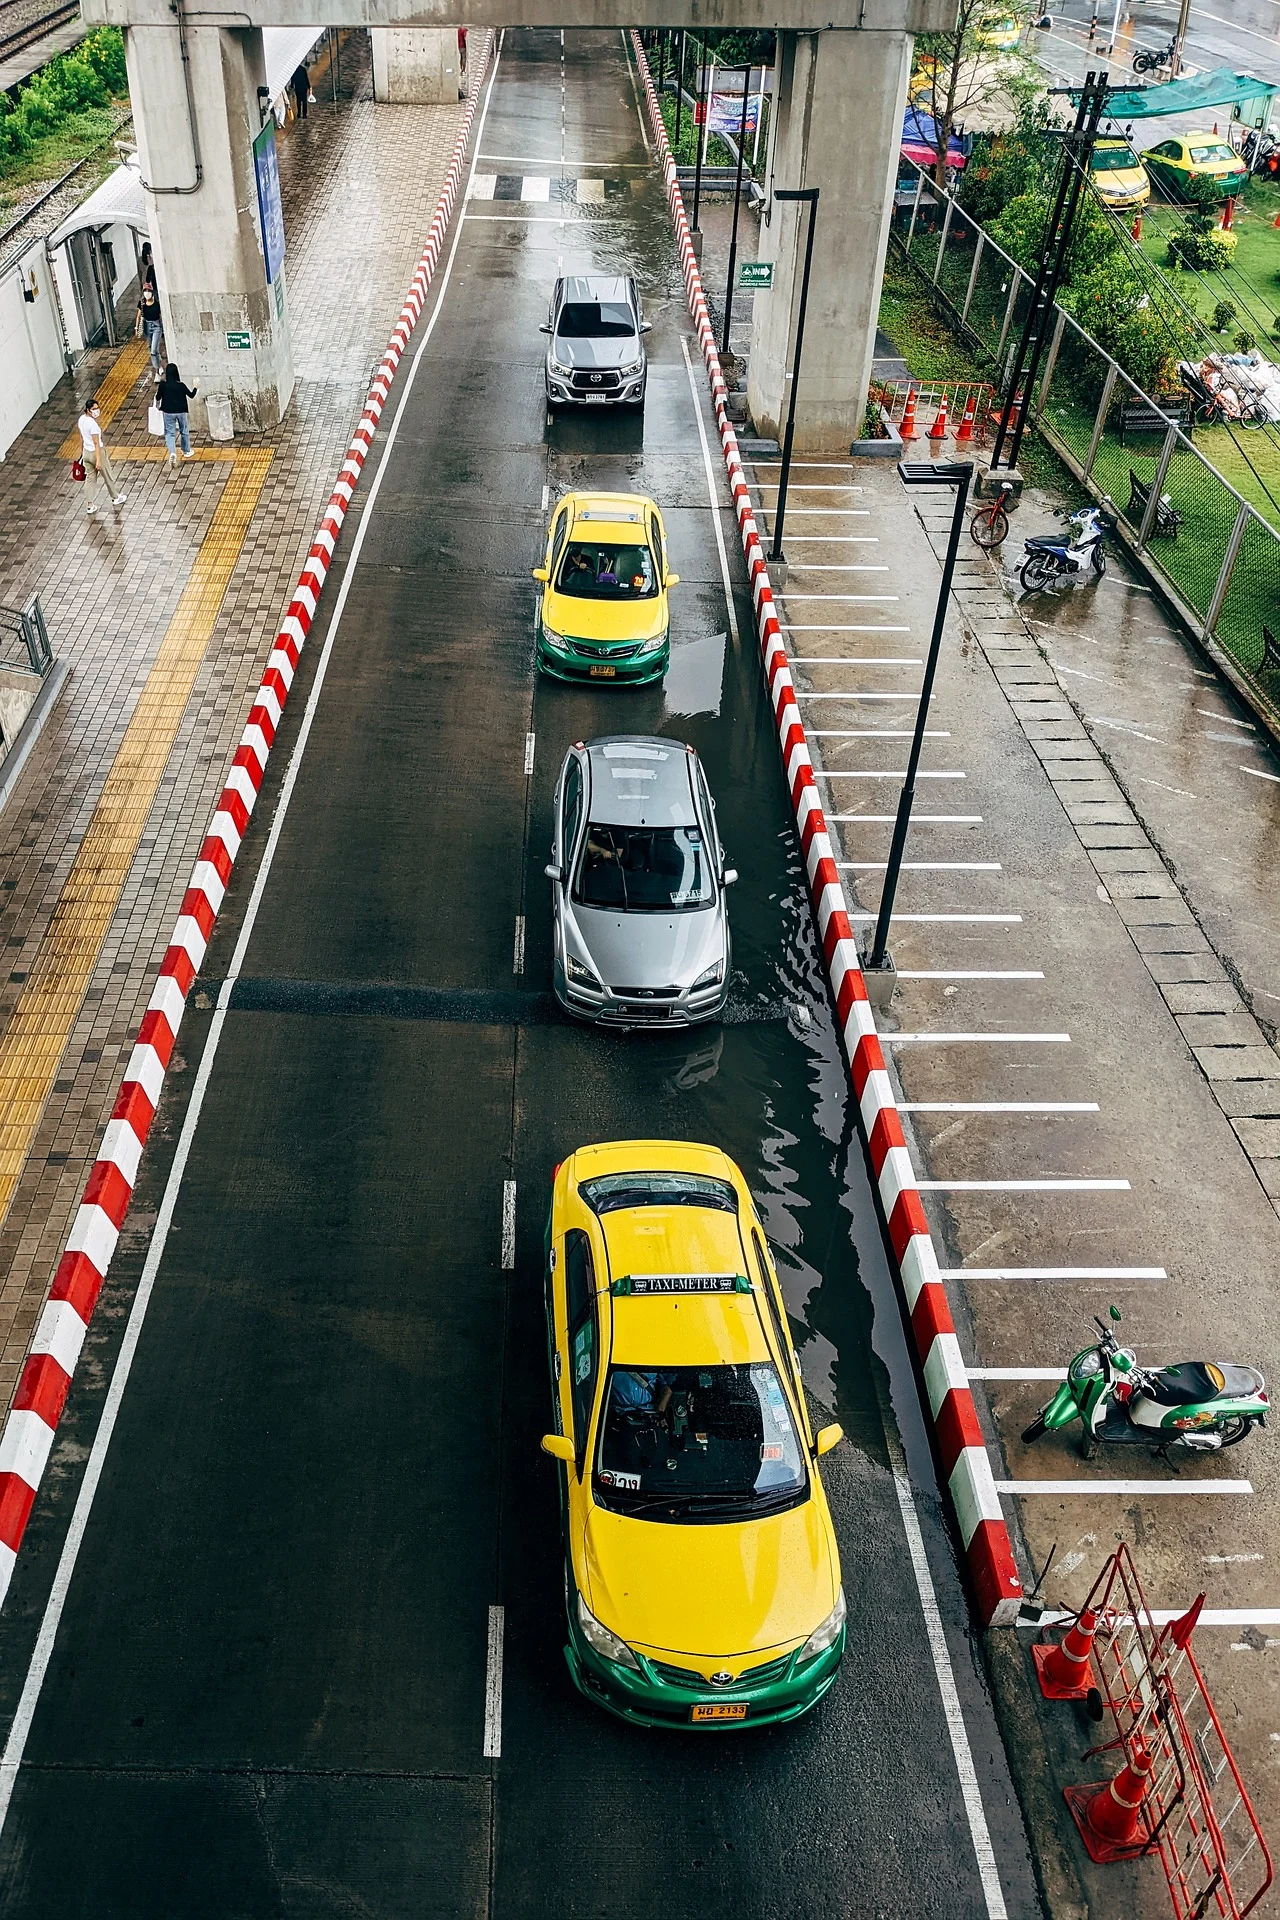 曼谷租車,停車規範,有紅白條紋的路緣石,表示禁止停車位置